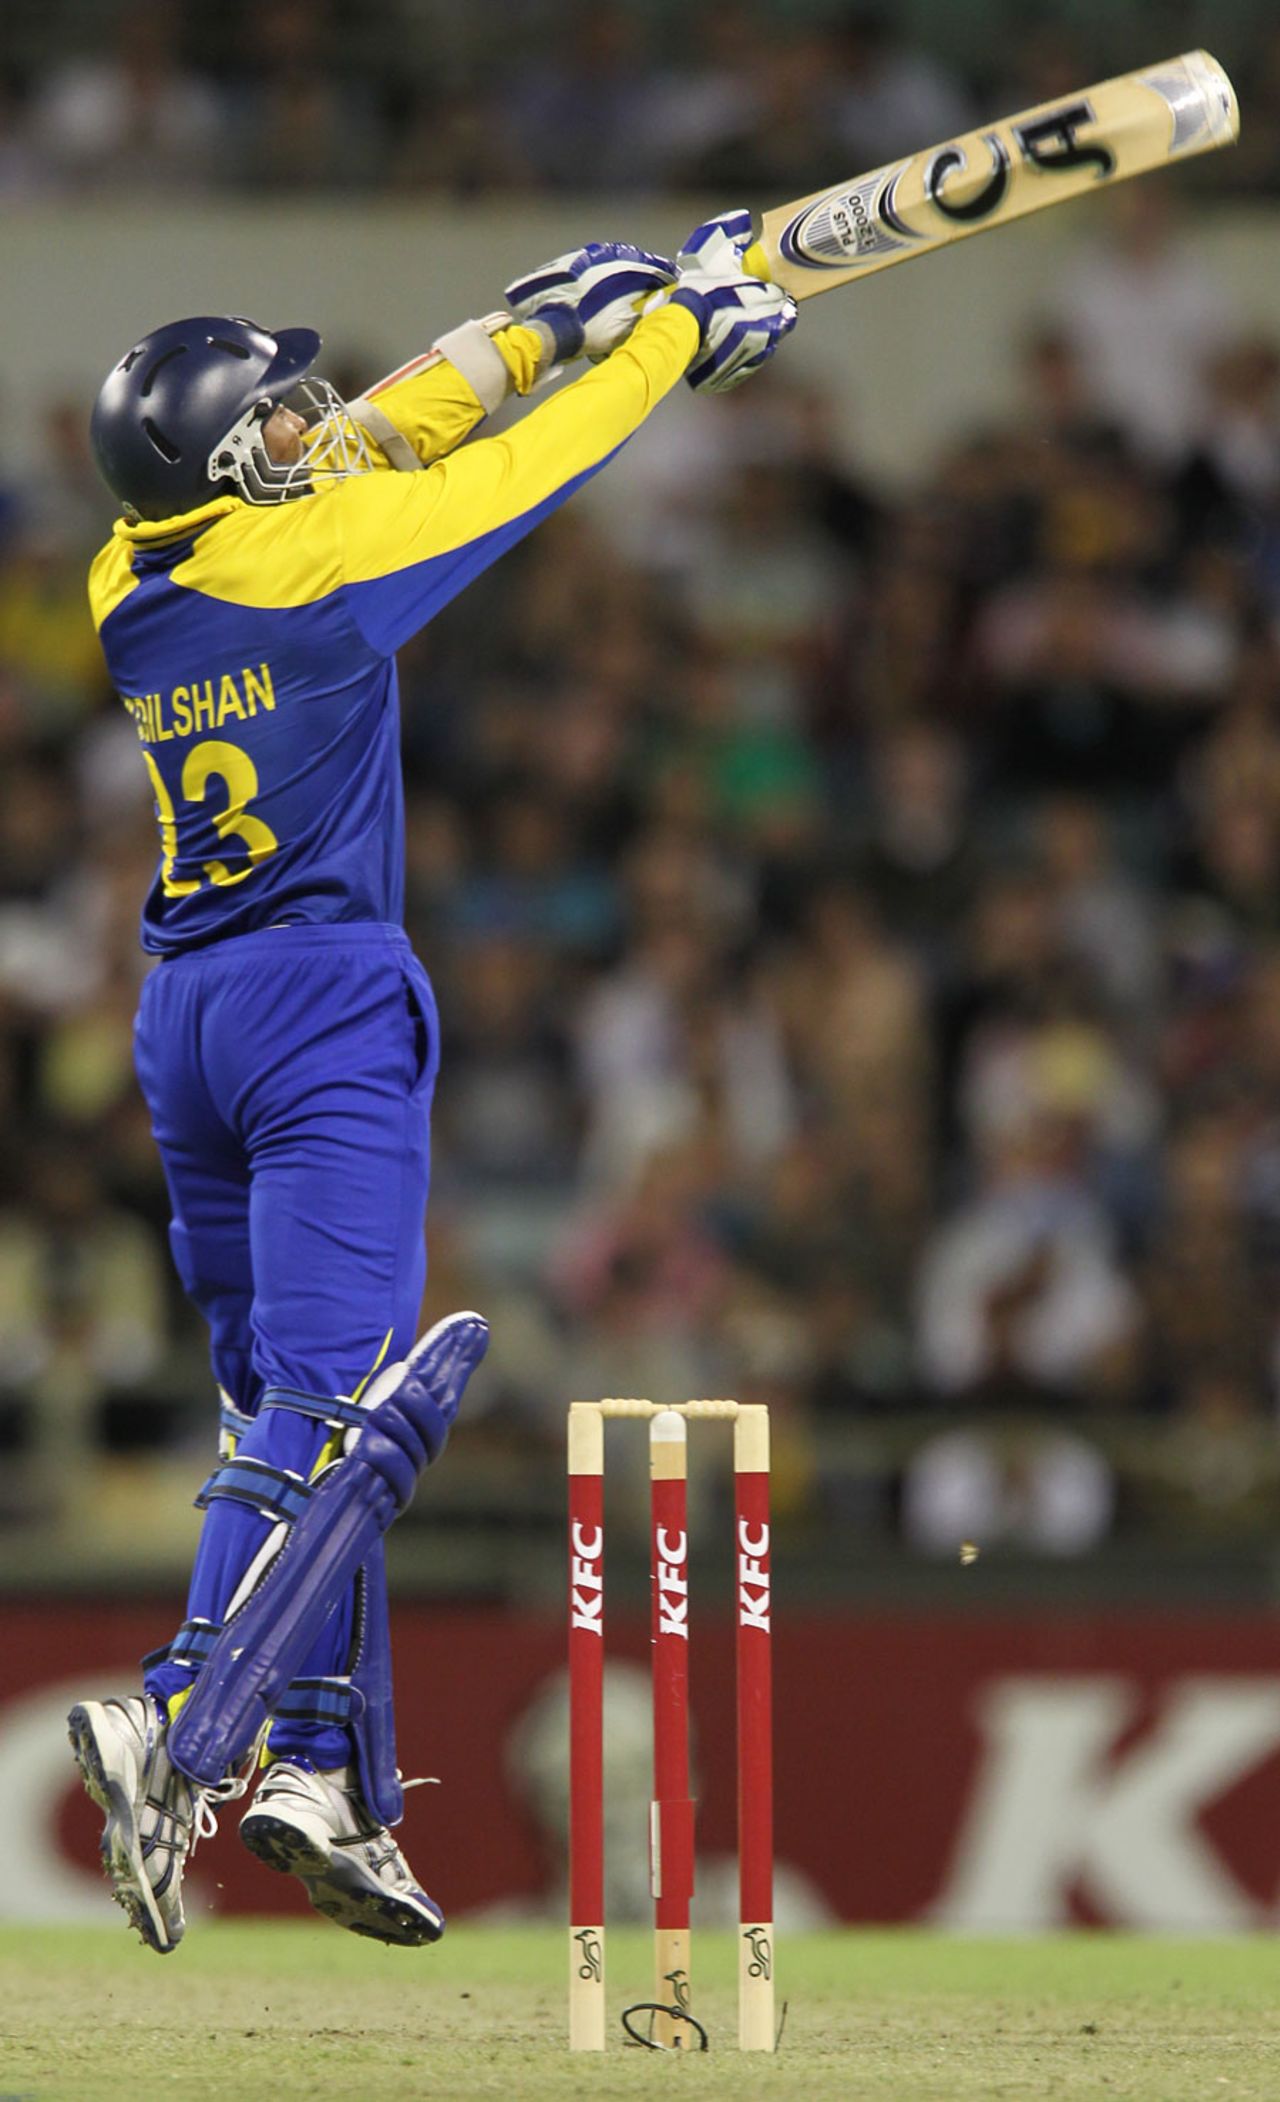 Tillakaratne Dilshan during his innings of 41, Australia v Sri Lanka, Only Twenty20, Perth, October 31, 2010